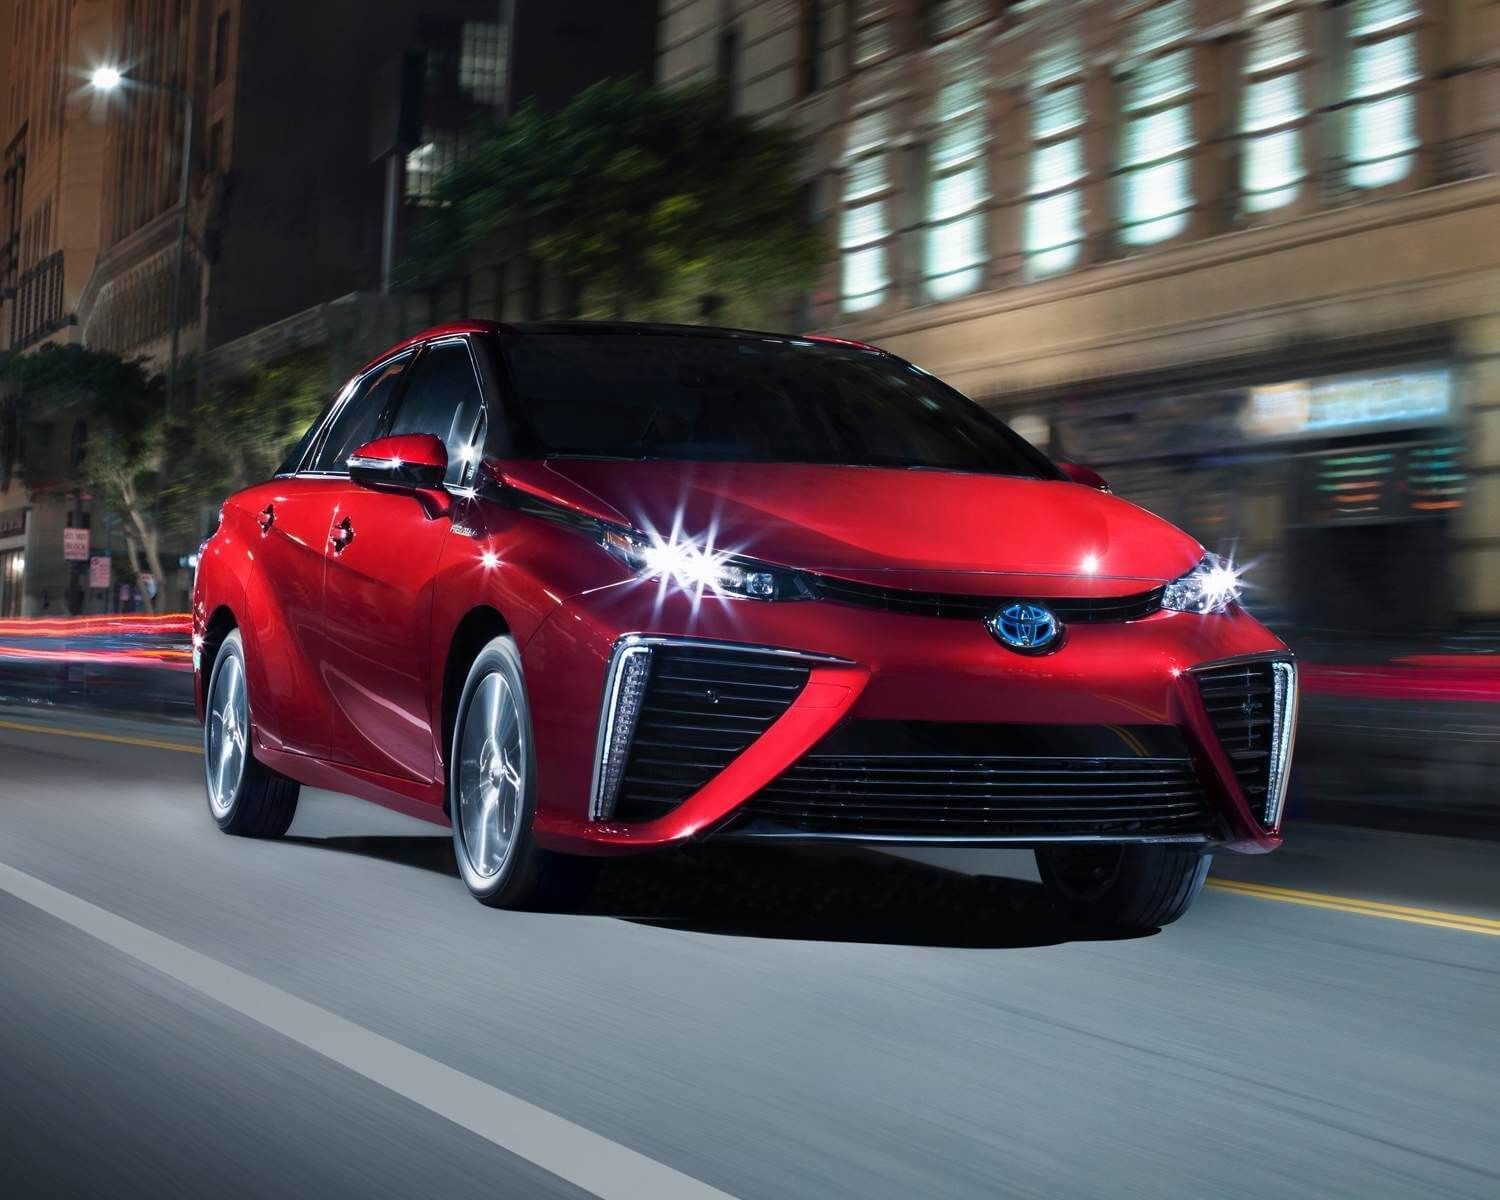 Vue 3/4 avant d'une voiture à hydrogène Toyota Mirai 2020 rouge roulant sur un boulevard en ville